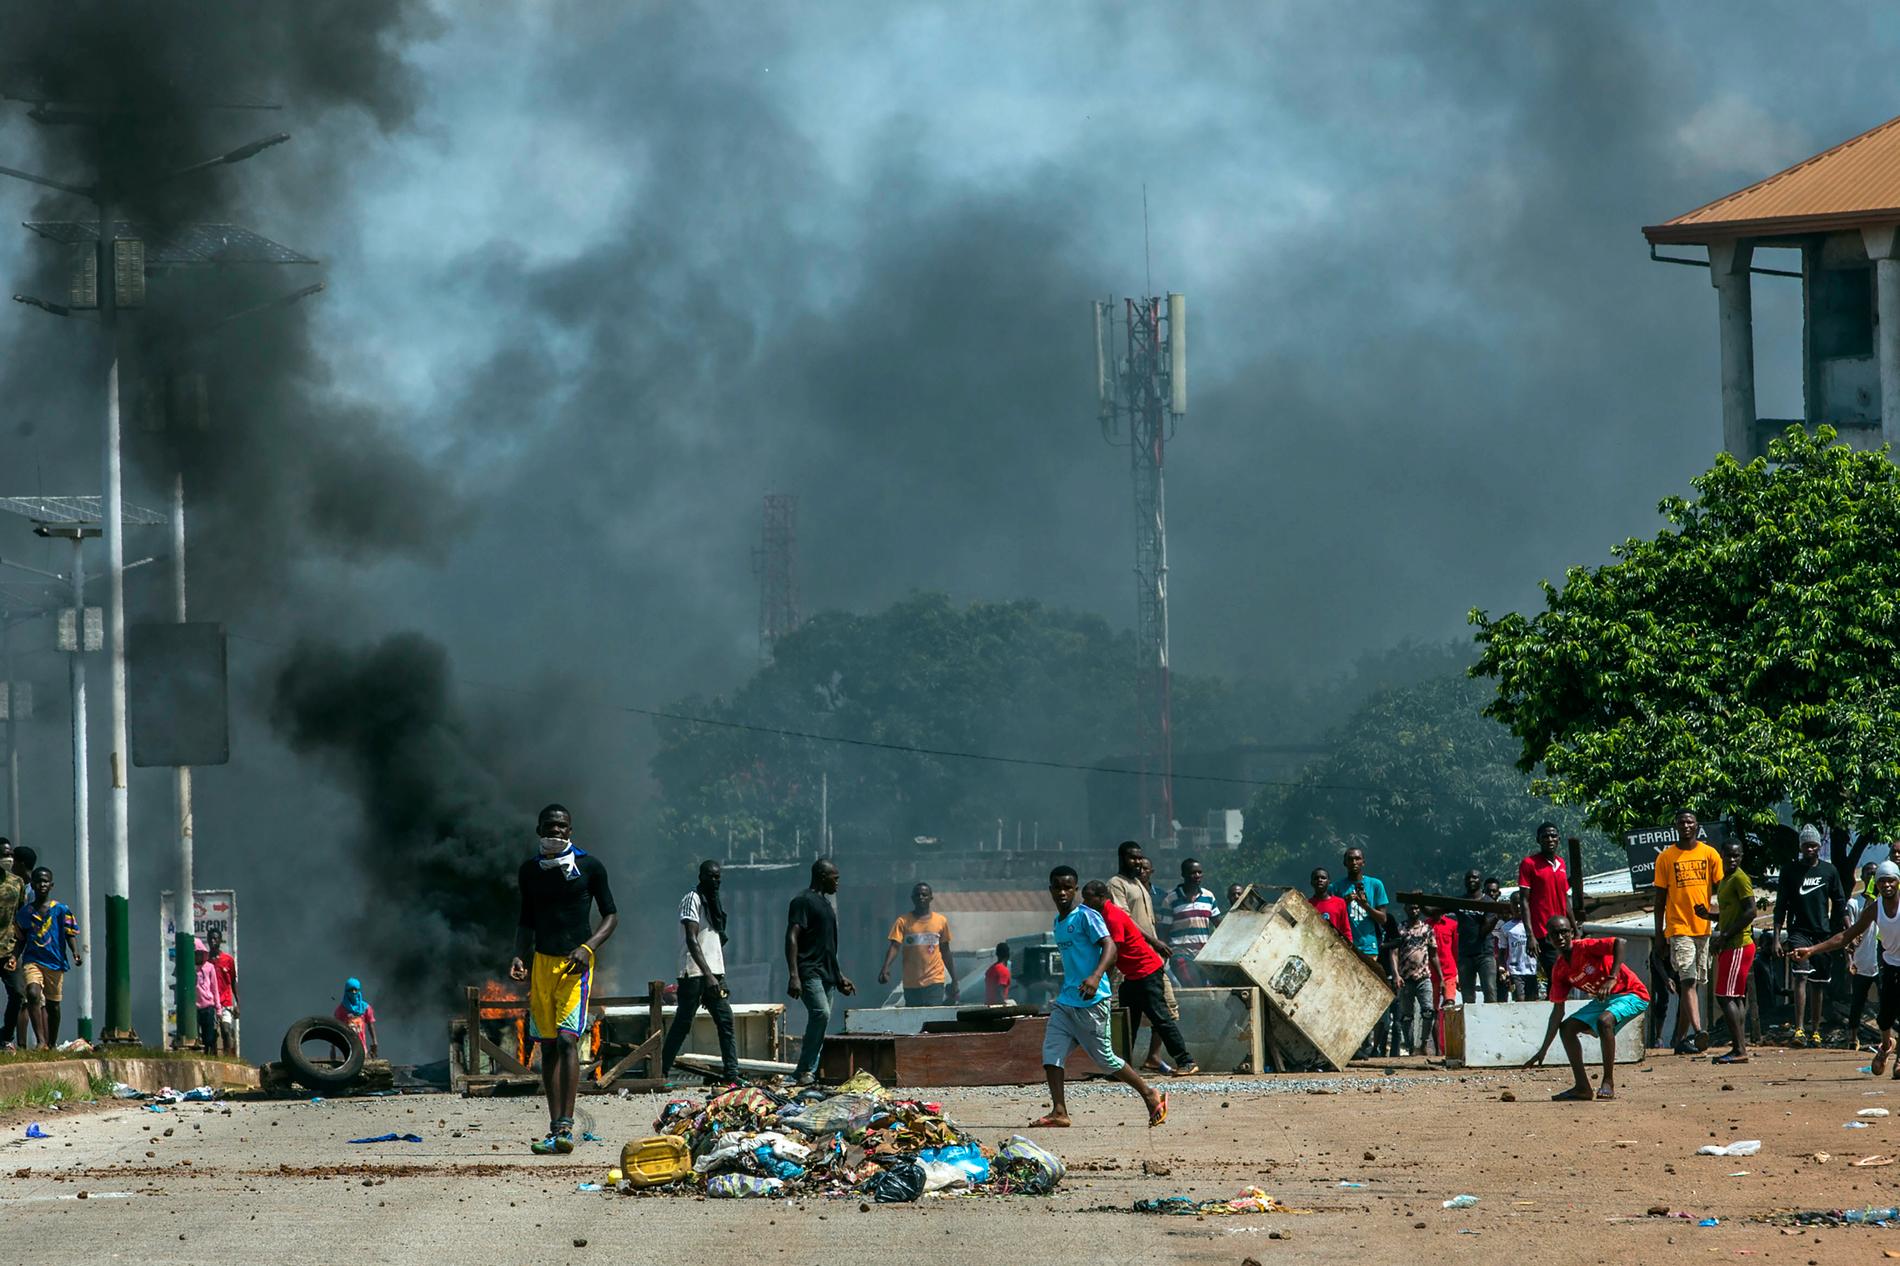 Oppositionen i Guinea ifrågasätter resultatet i förra veckans presidentval och flera personer har dödats i oroligheter. Bild från i onsdags.